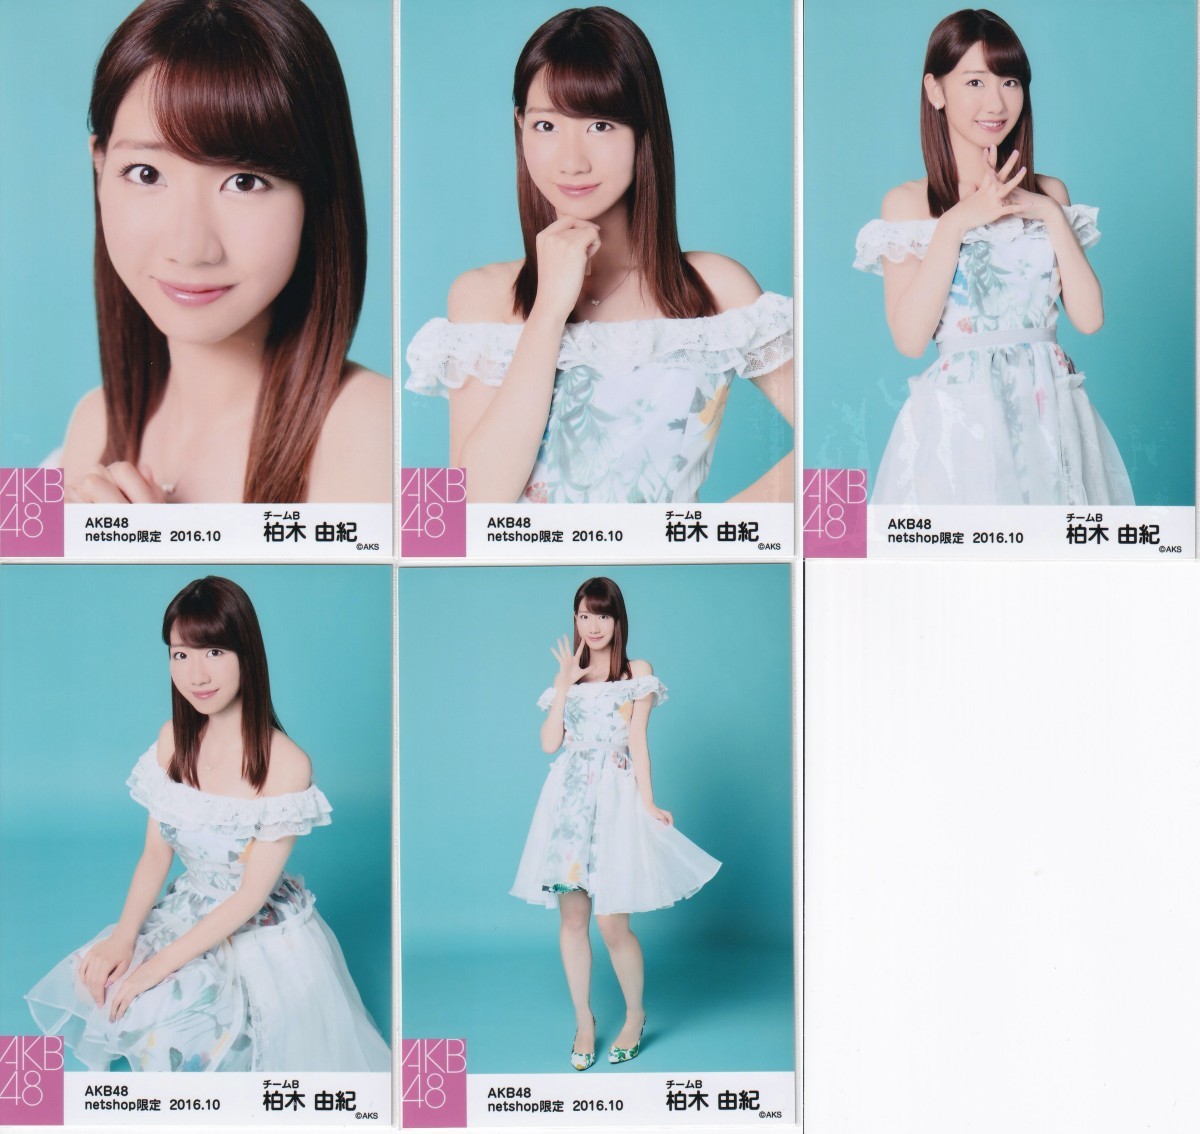 AKB48 柏木由紀 netshop限定 2016.10 個別 生写真 5種コンプ ボタニカル衣装_画像1